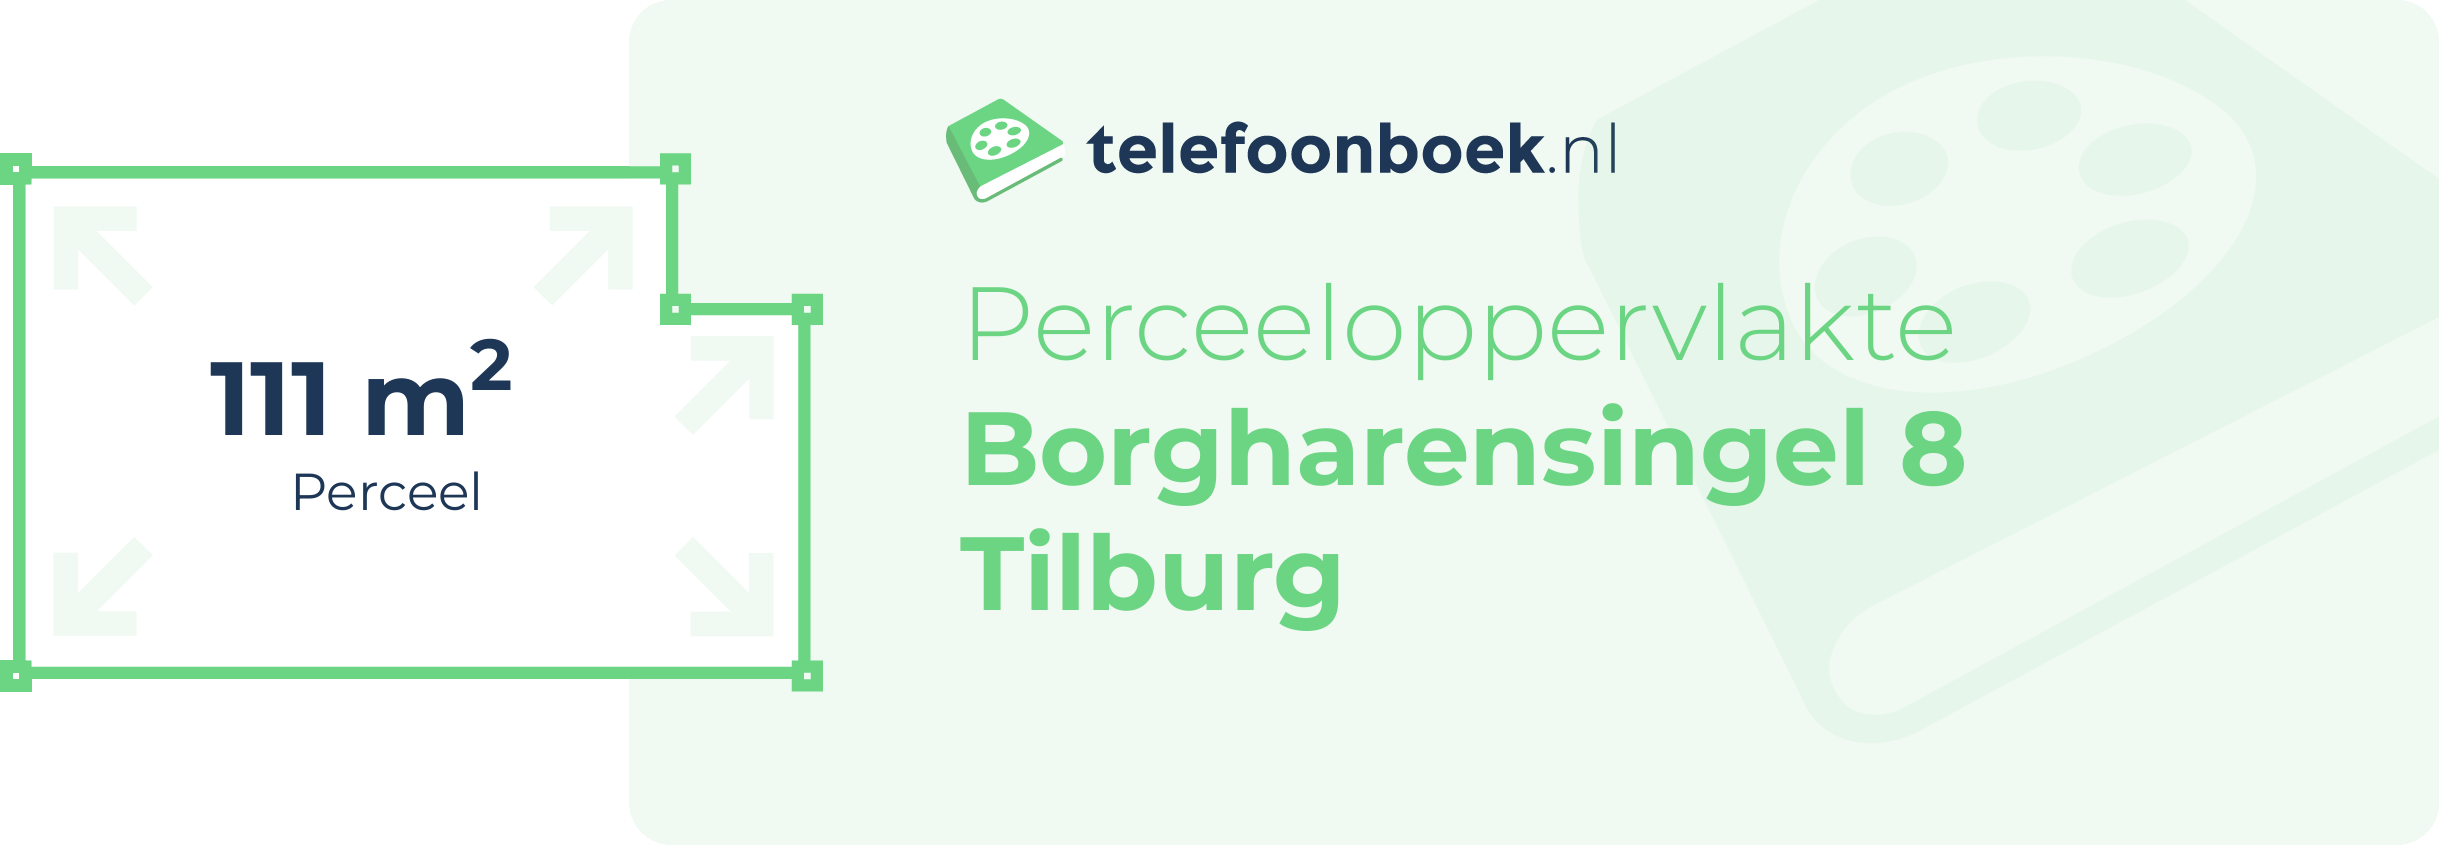 Perceeloppervlakte Borgharensingel 8 Tilburg